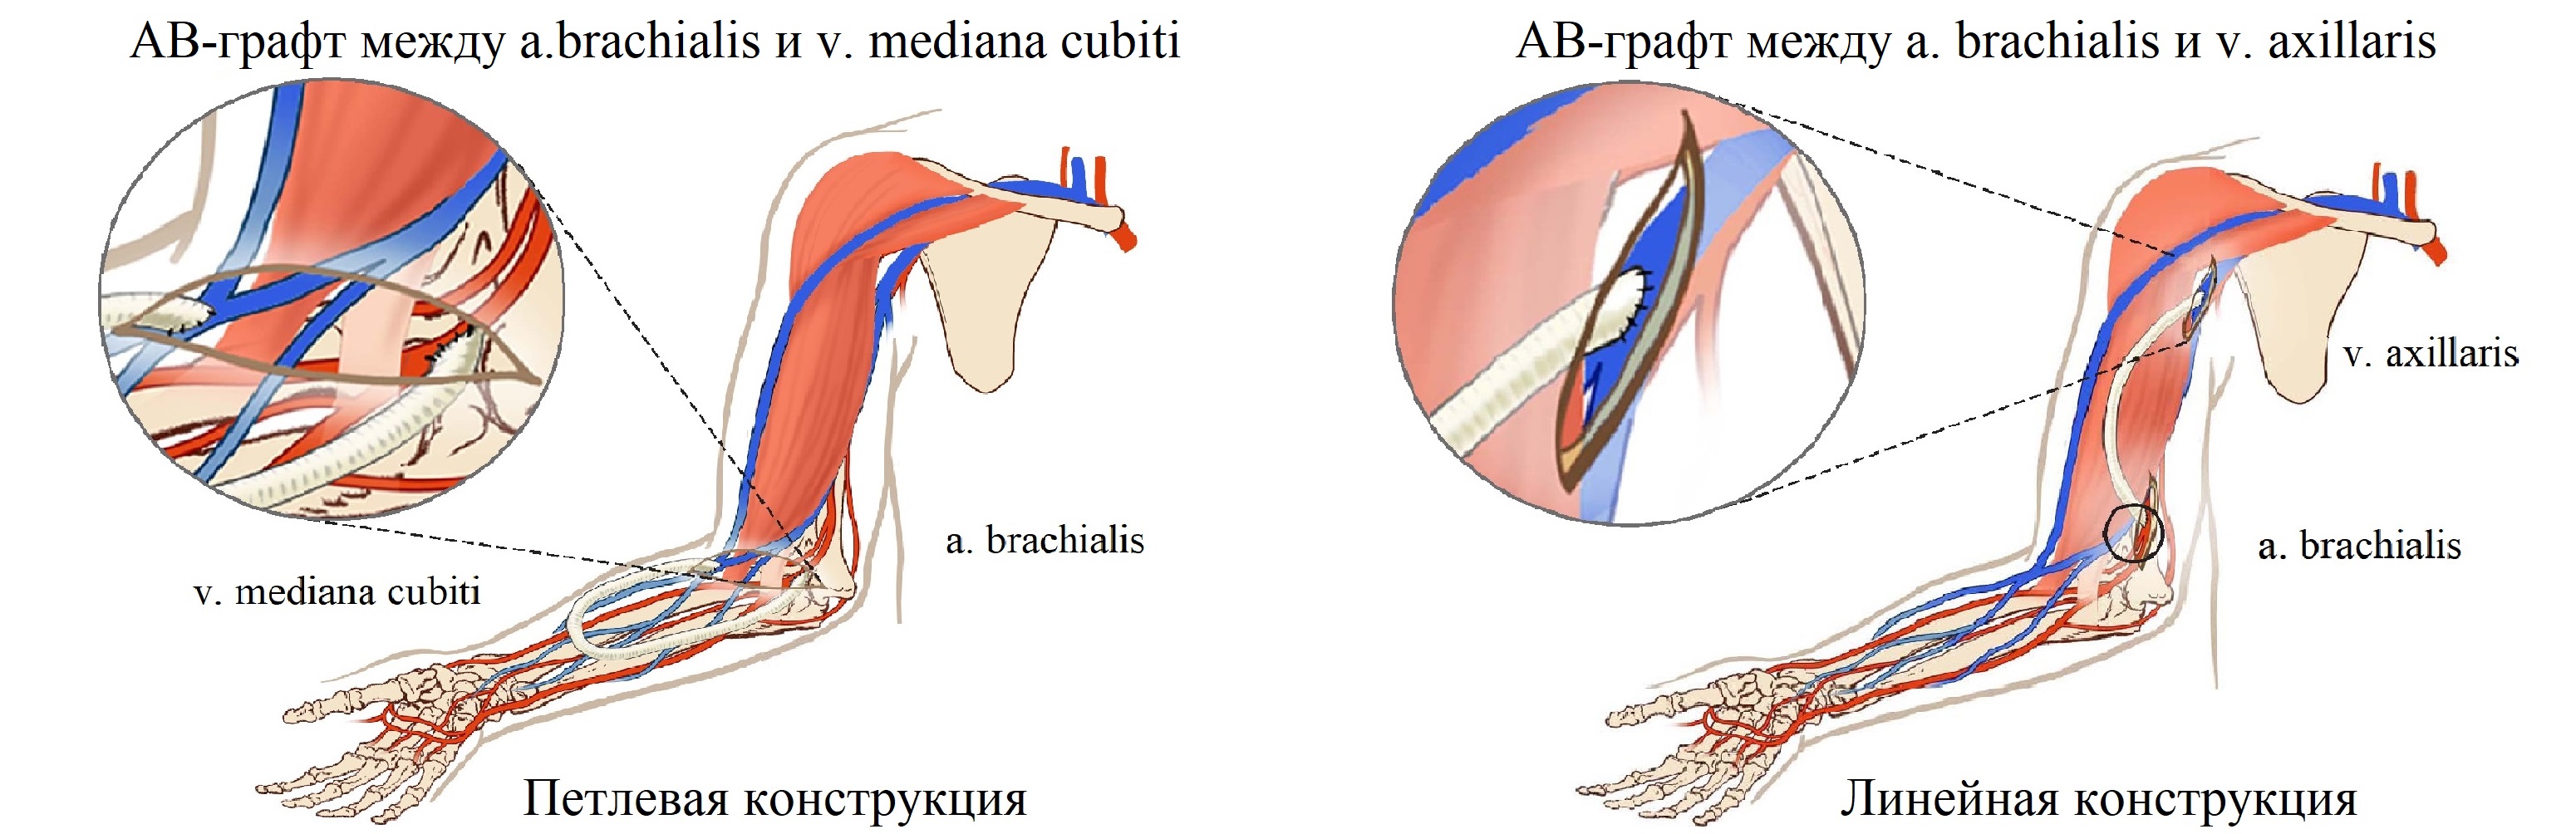 Артериовенозный шунт. Артерия венозная фистула. Протез фистулы для гемодиализа. Артерио-венозная фистула для гемодиализа.